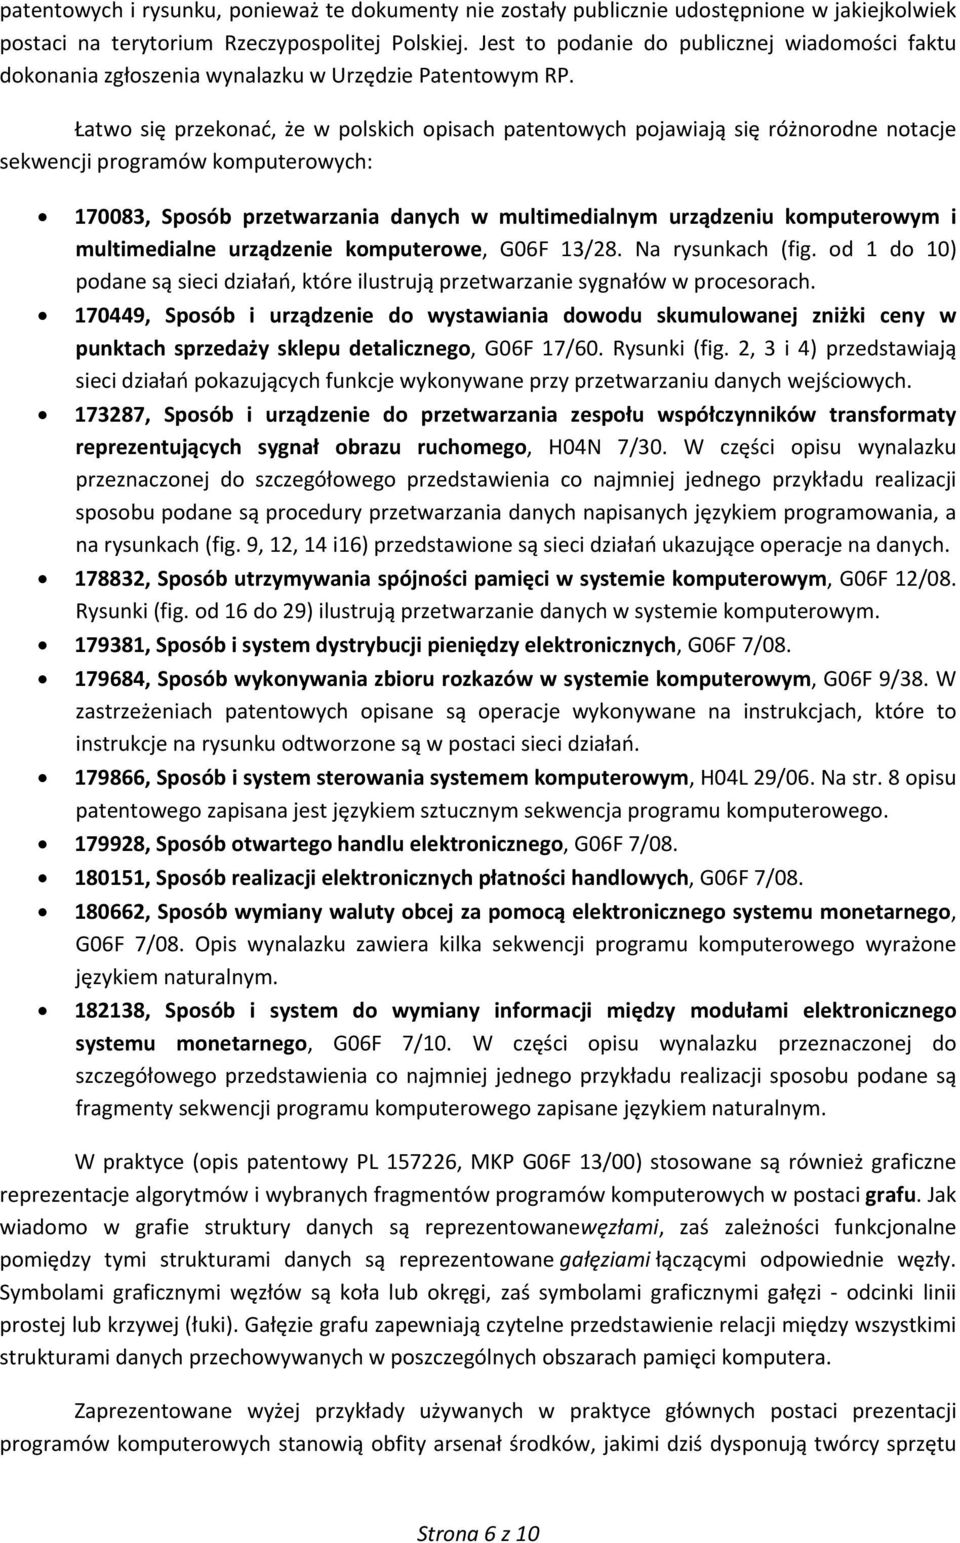 Łatwo się przekonać, że w polskich opisach patentowych pojawiają się różnorodne notacje sekwencji programów komputerowych: 170083, Sposób przetwarzania danych w multimedialnym urządzeniu komputerowym